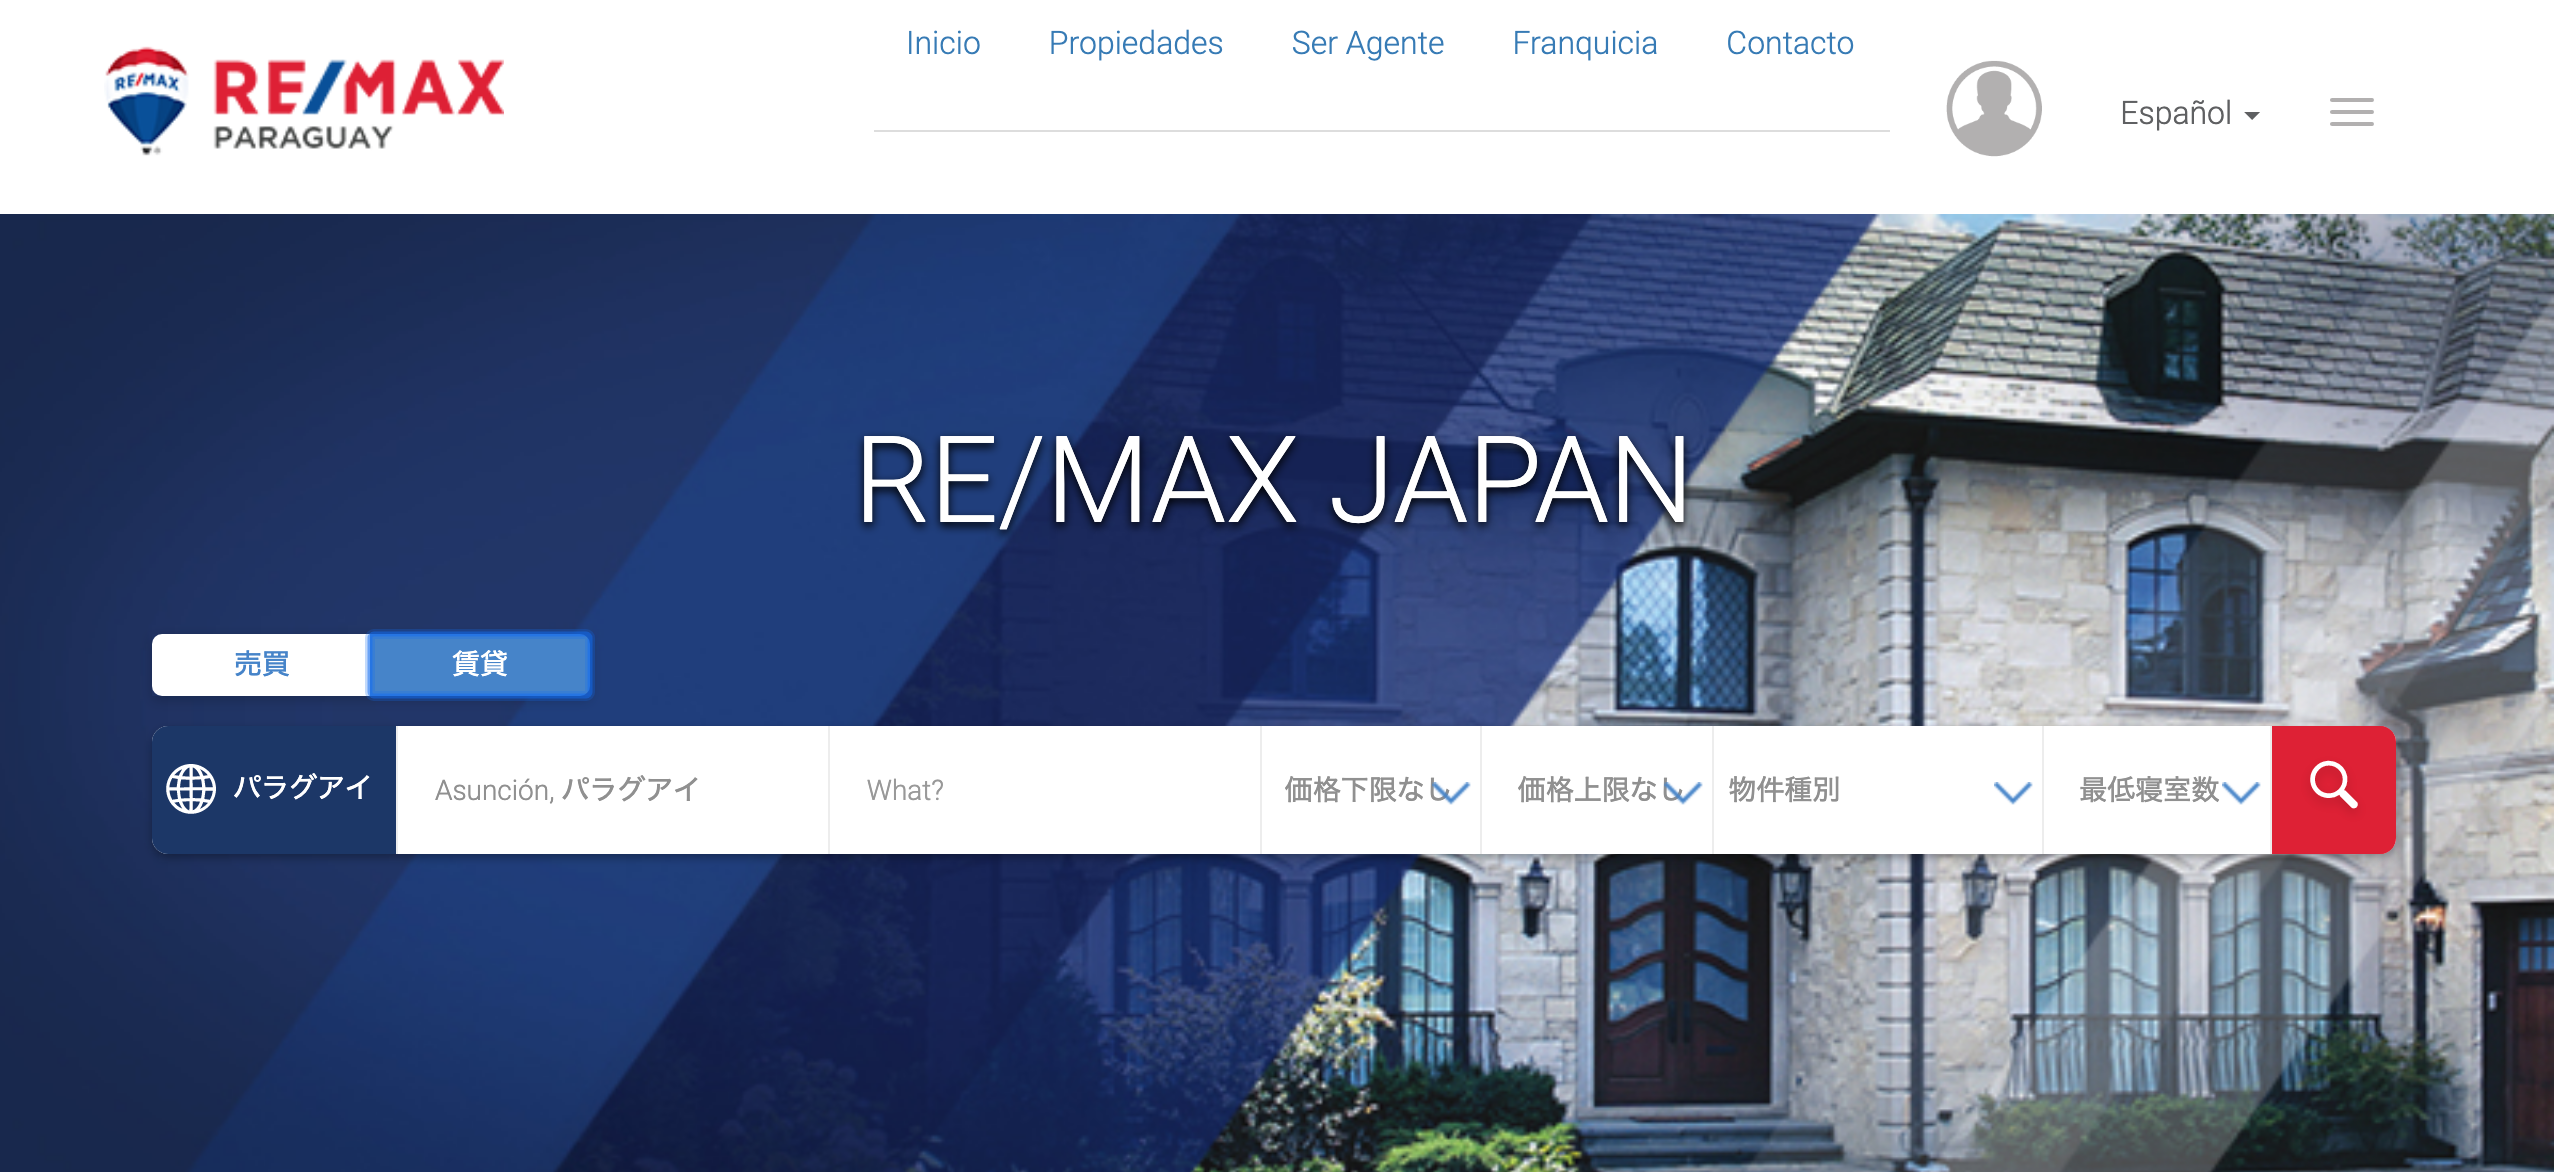 remax 検索画面